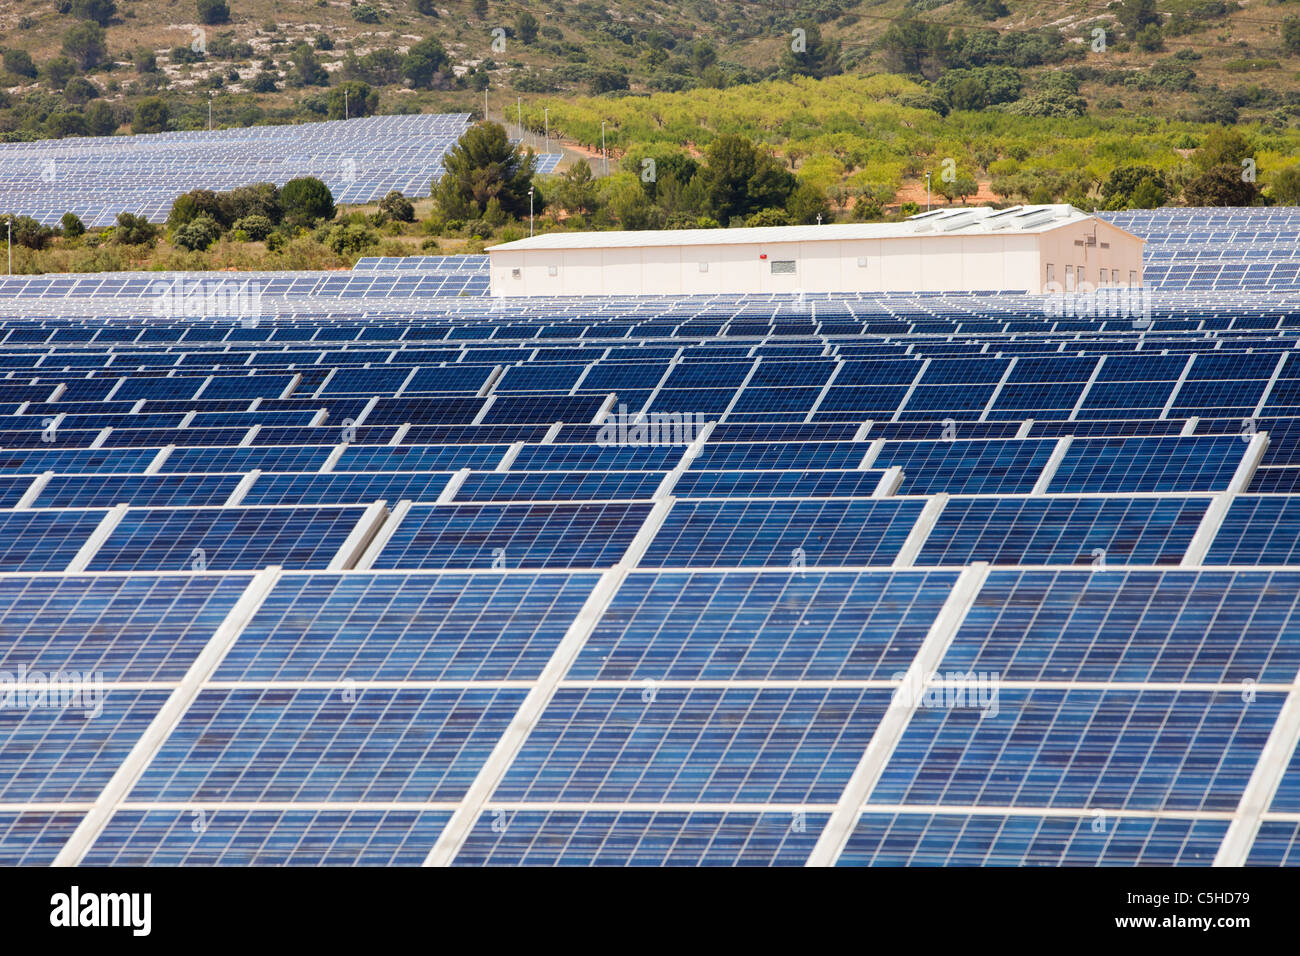 Panneaux photovoltaïques à Beneixama solar power station, Beneixama, Mercie, Espagne. Banque D'Images